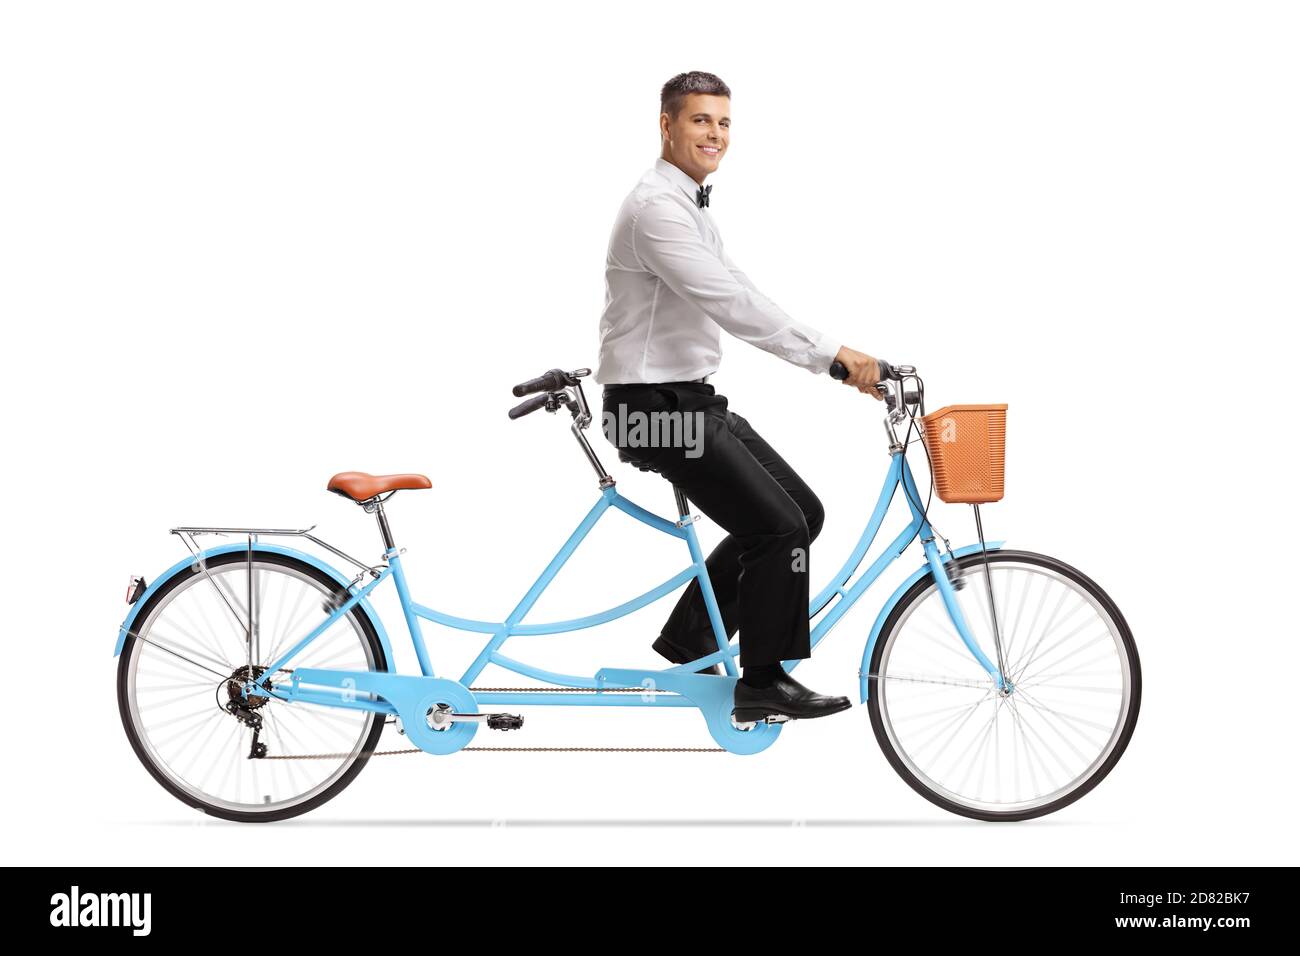 Foto di profilo a lunghezza intera di uno sposo sorridente che cavalca un bicicletta in tandem isolata su sfondo bianco Foto Stock